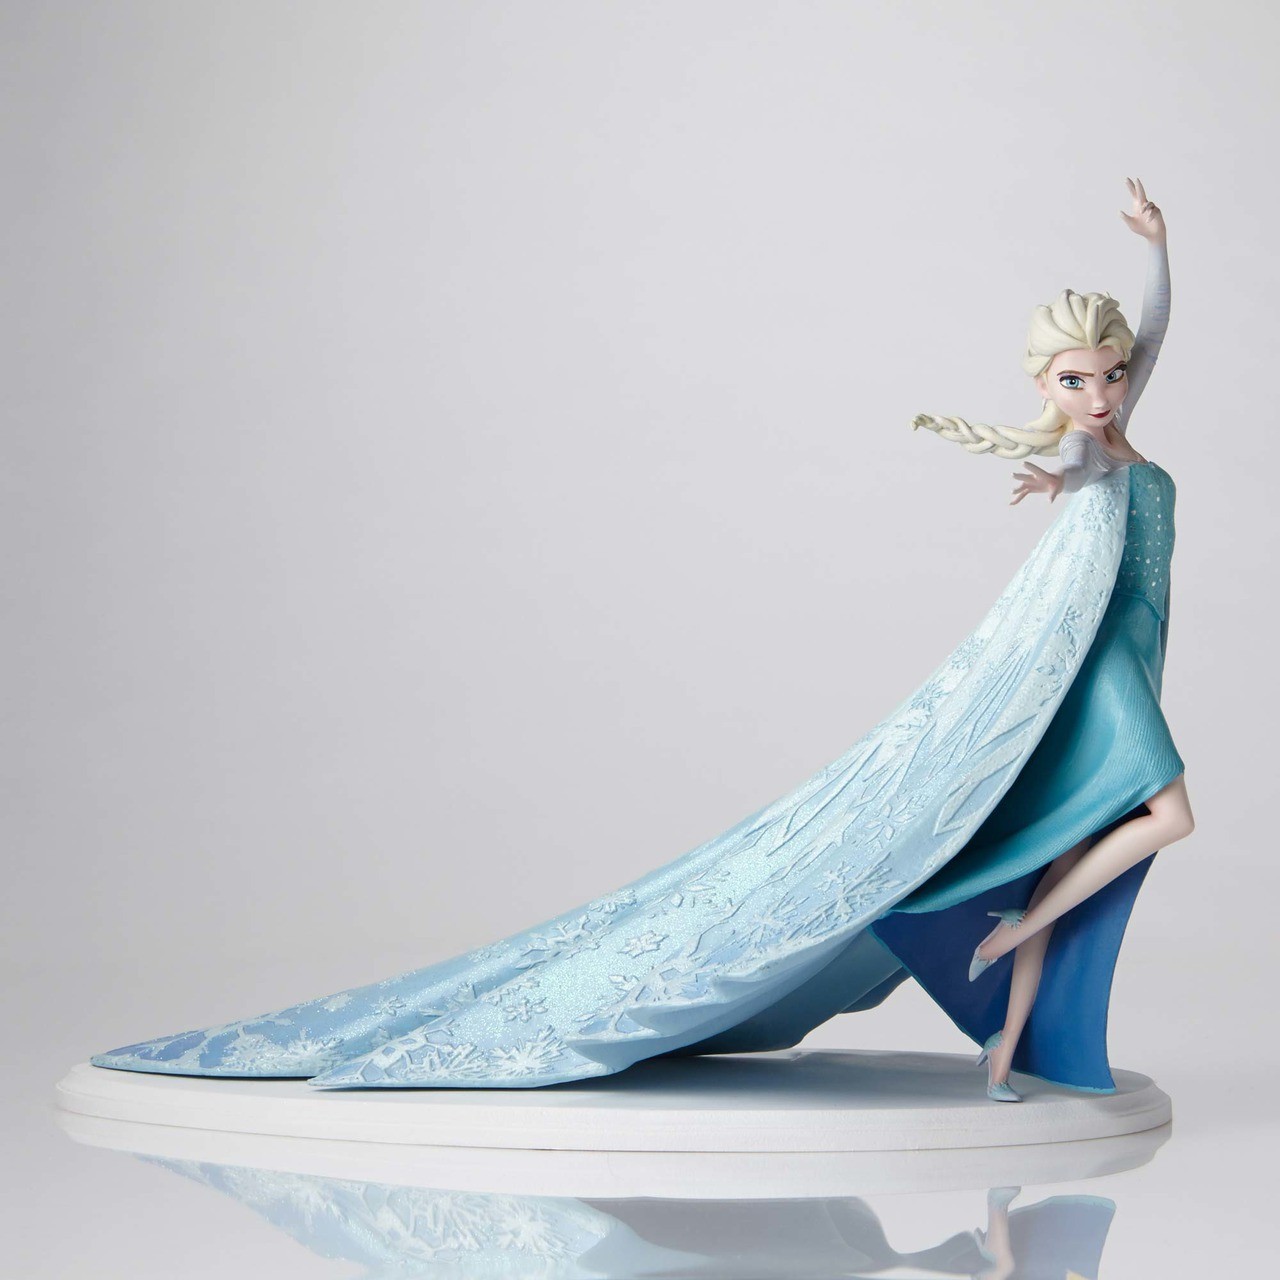 LA REINE DES NEIGES: ELSA - statuette résine 13 cm, my figurine, mfrdn001